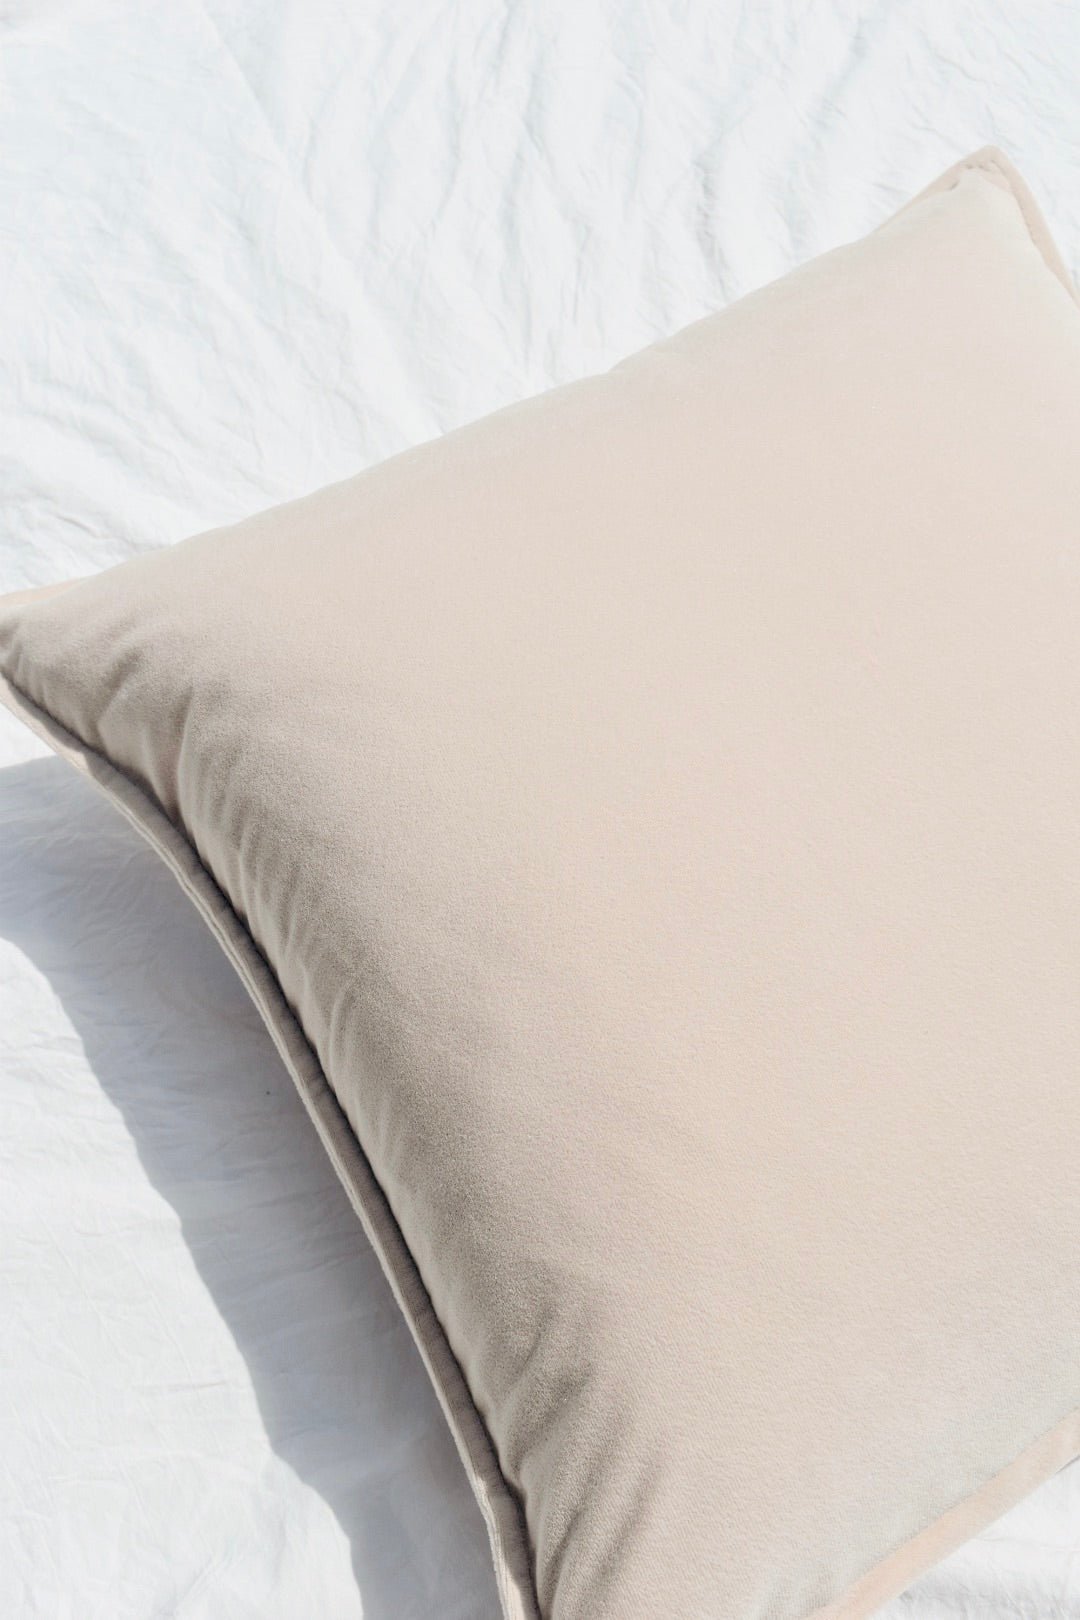 Dune Velvet Pillow Cover - Ardent Market - Ardent Market